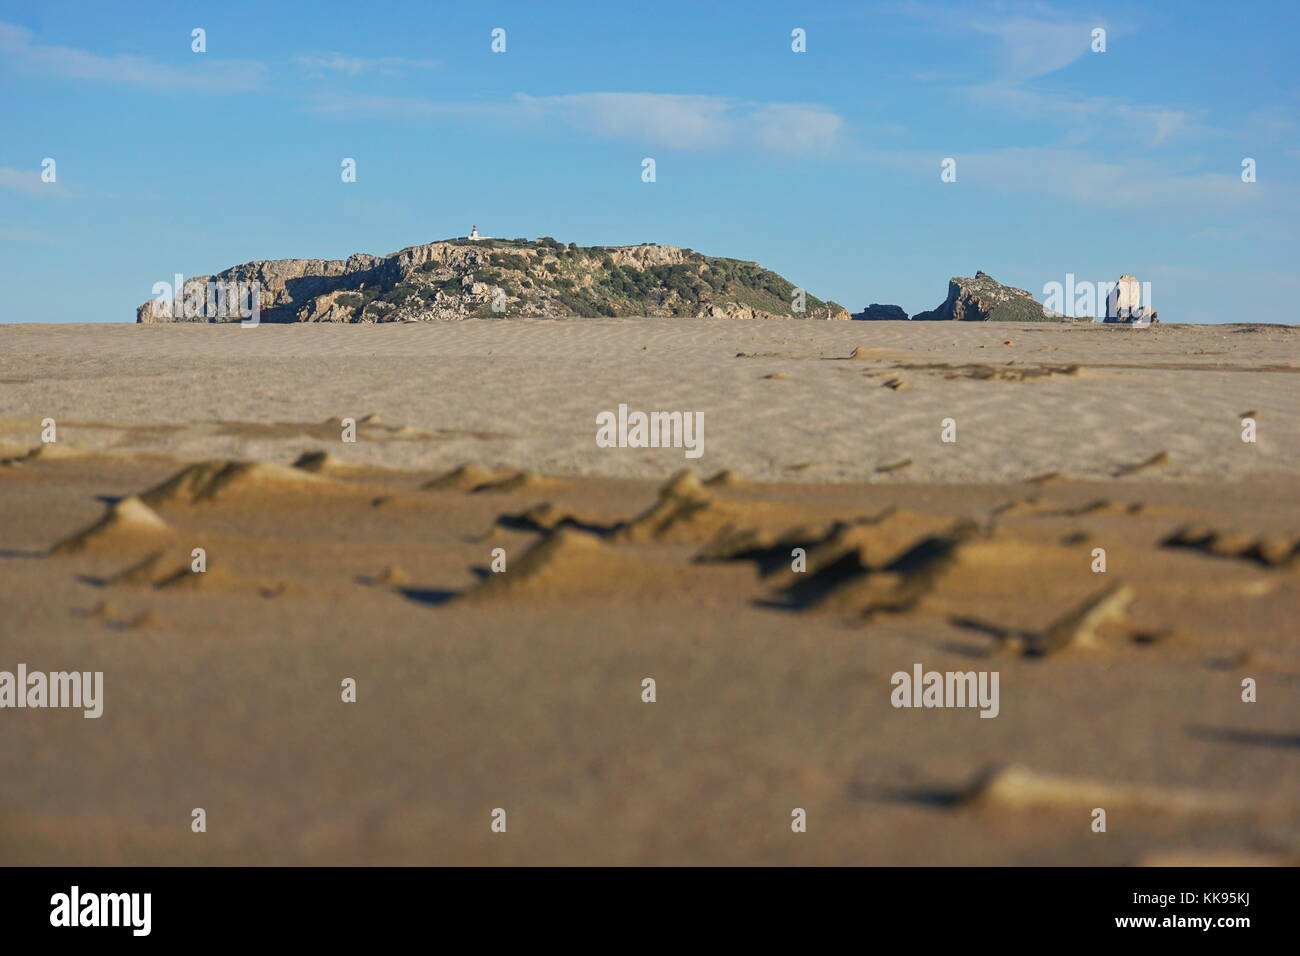 La reserva marina de las islas Medes en el horizonte visto desde un suelo de arena en la playa de l'Estartit, Costa Brava, Cataluña, España, el Mediterráneo Foto de stock